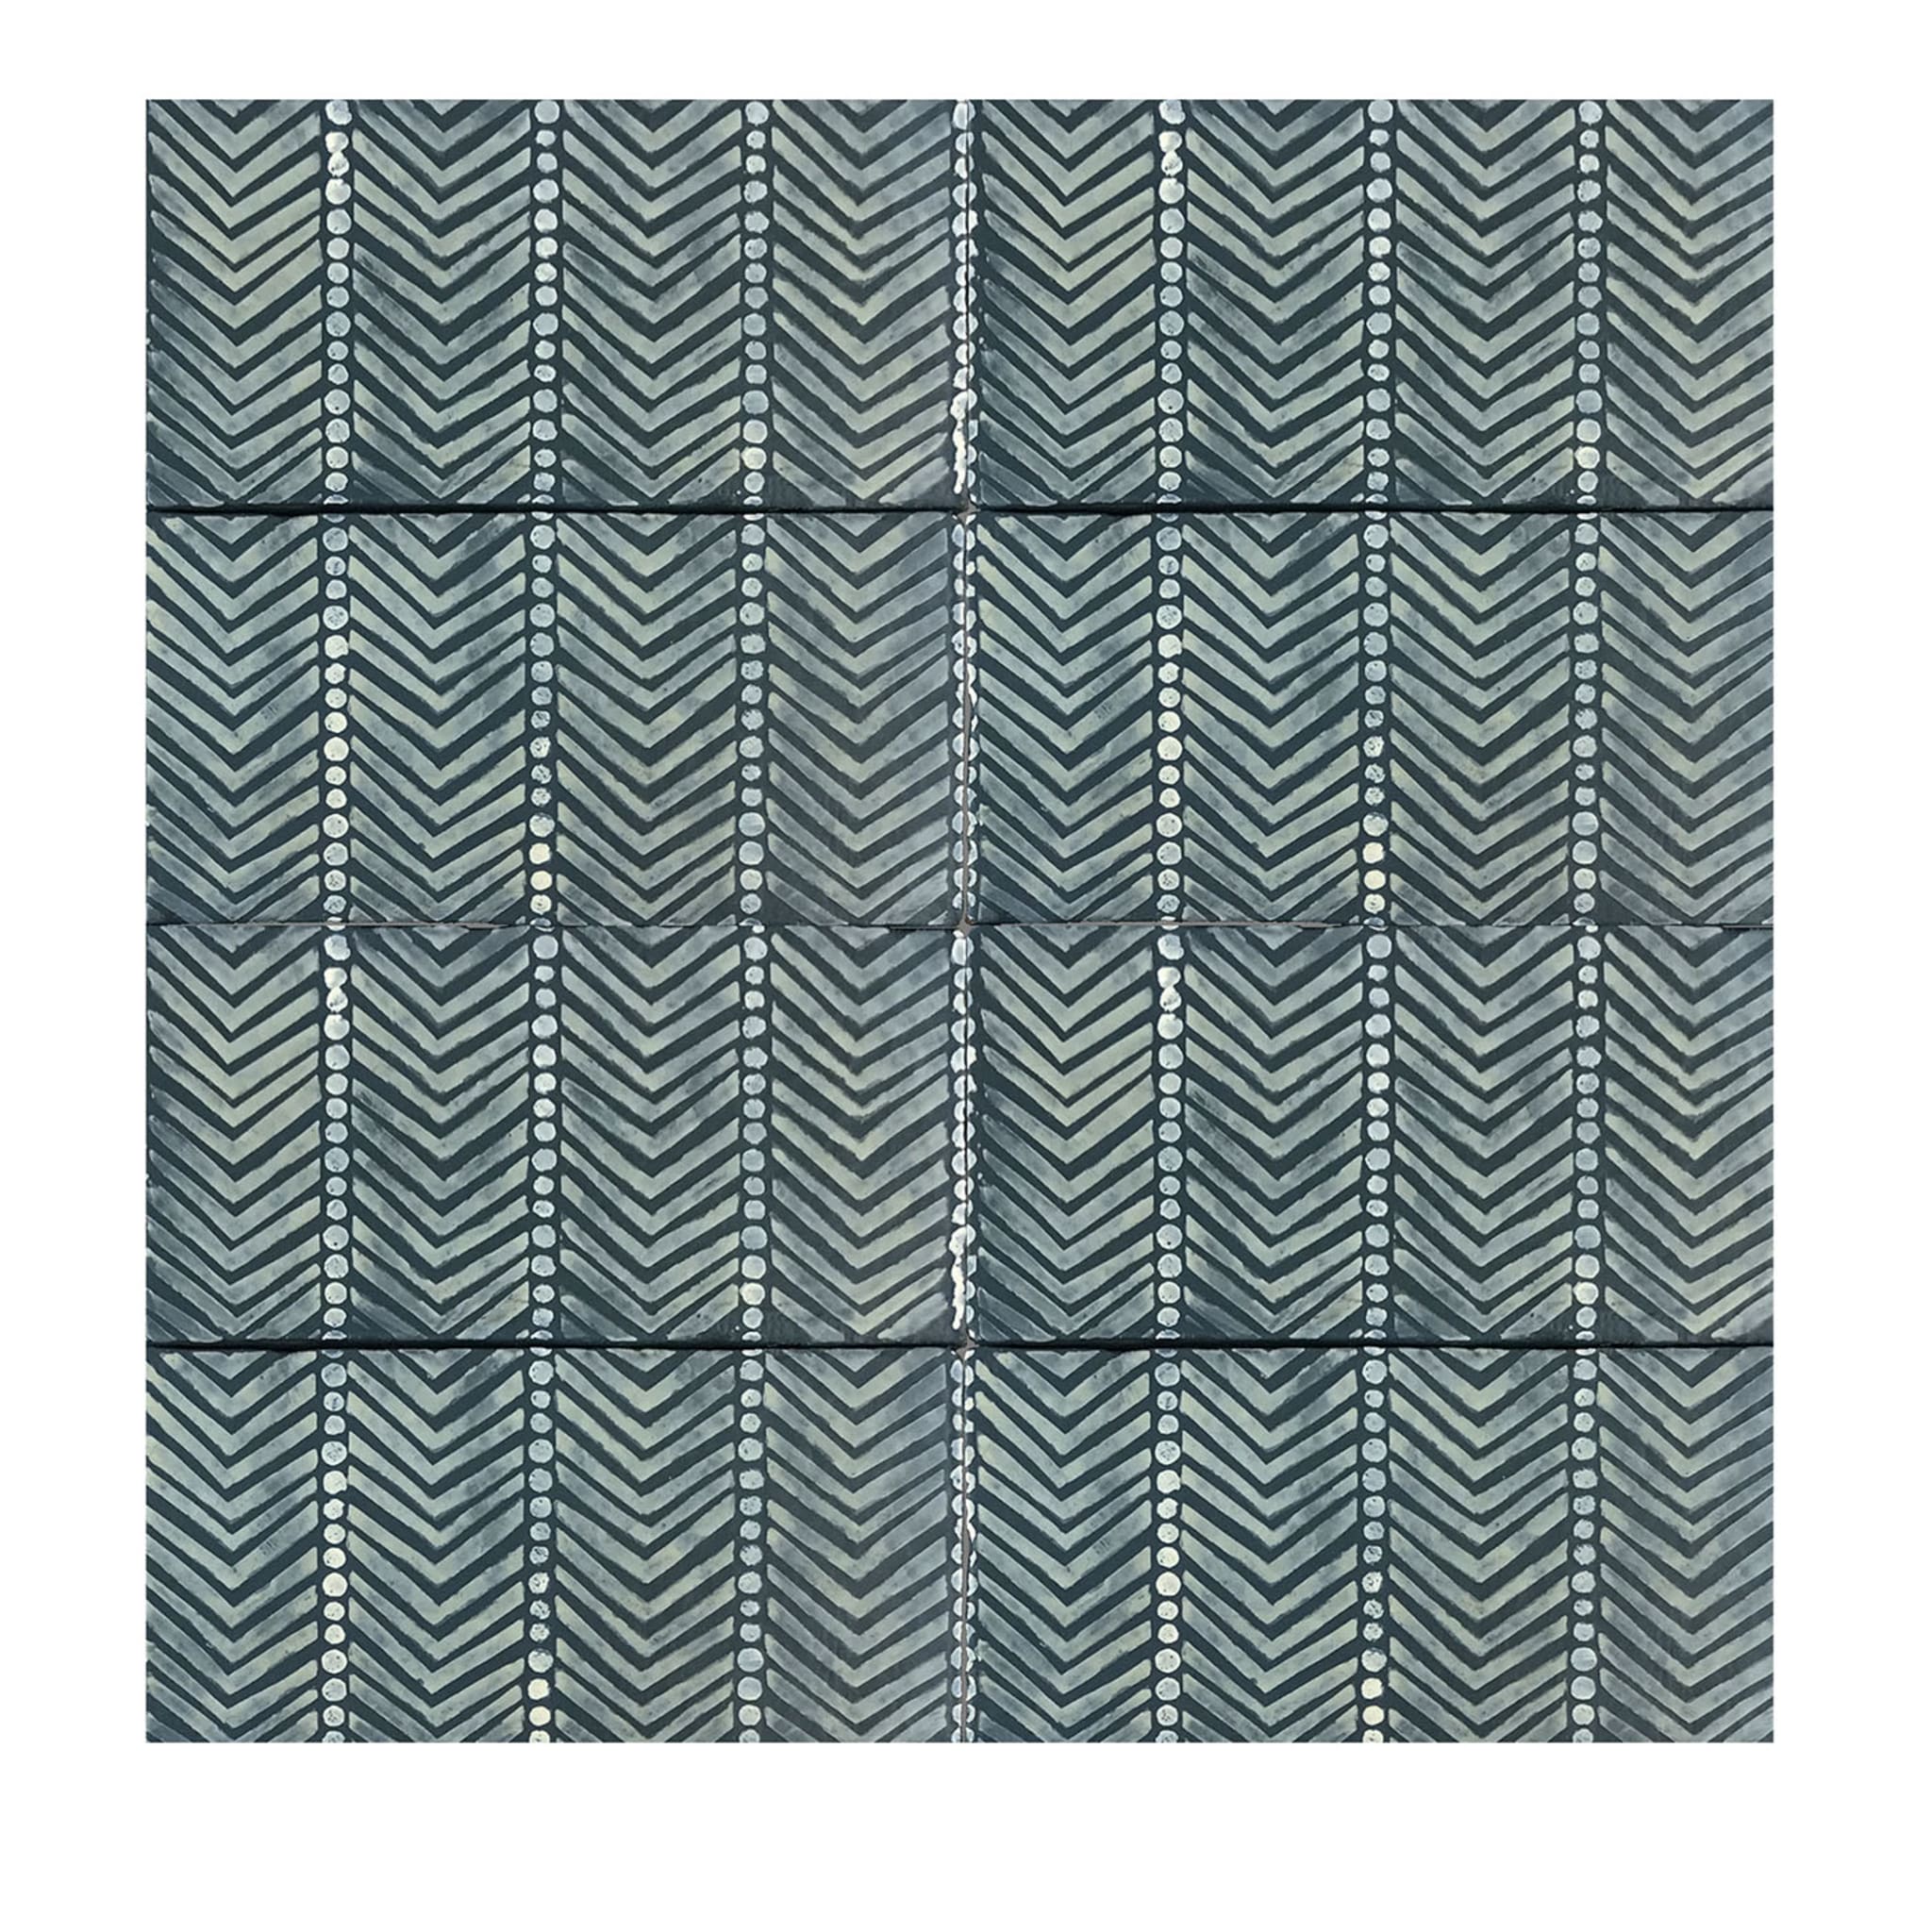 Daamè Set of 50 Rectangular Blue Tiles #1 - Main view